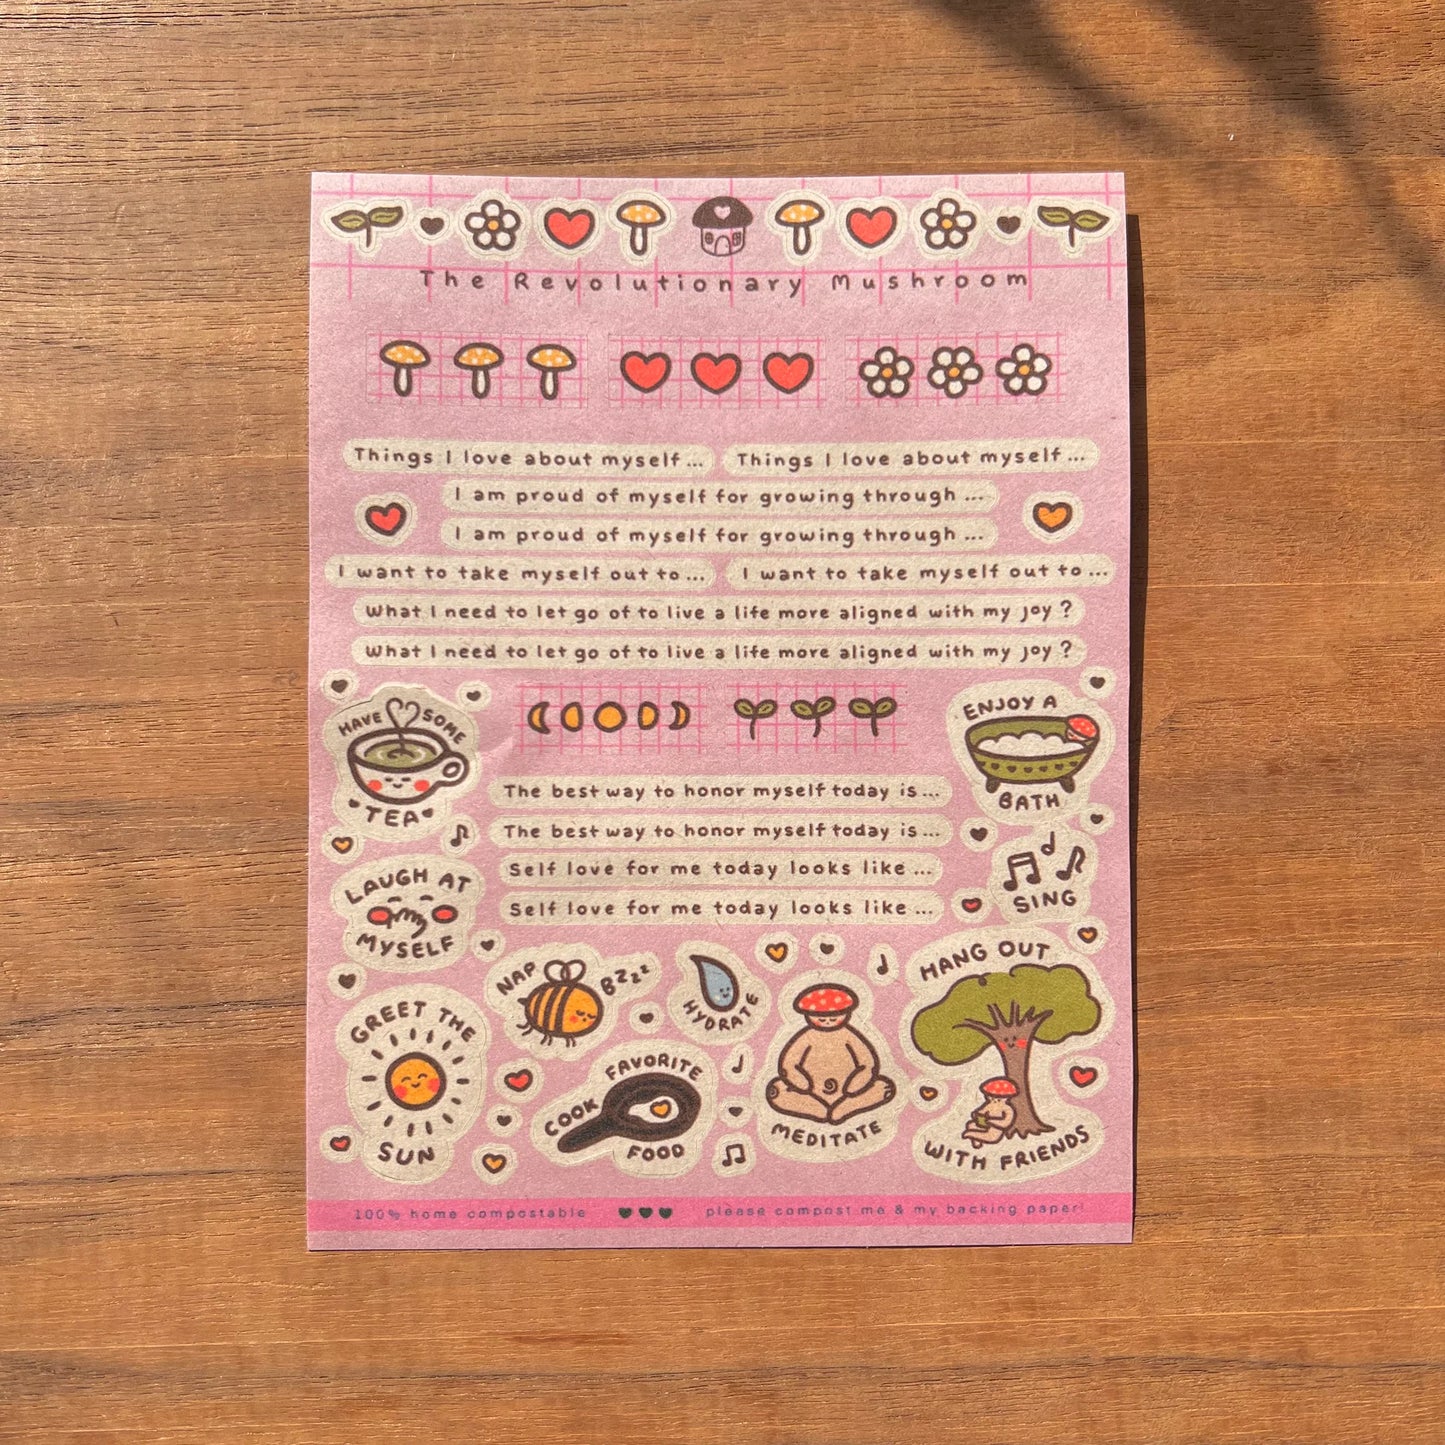 The Revolutionary Mushroom: Sticker Sheets